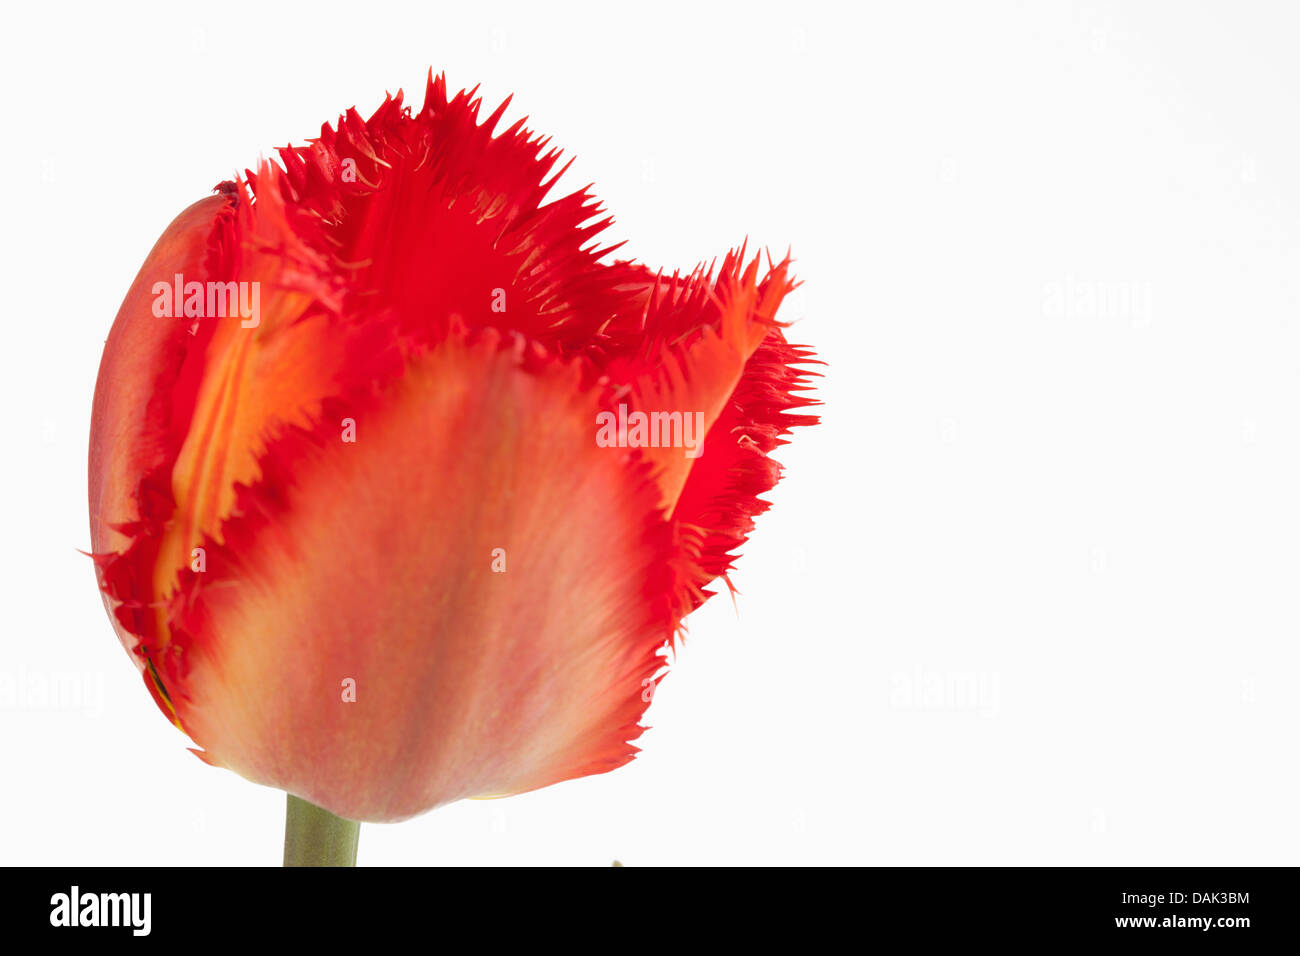 Red orlata tulip flower contro uno sfondo bianco, close up Foto Stock